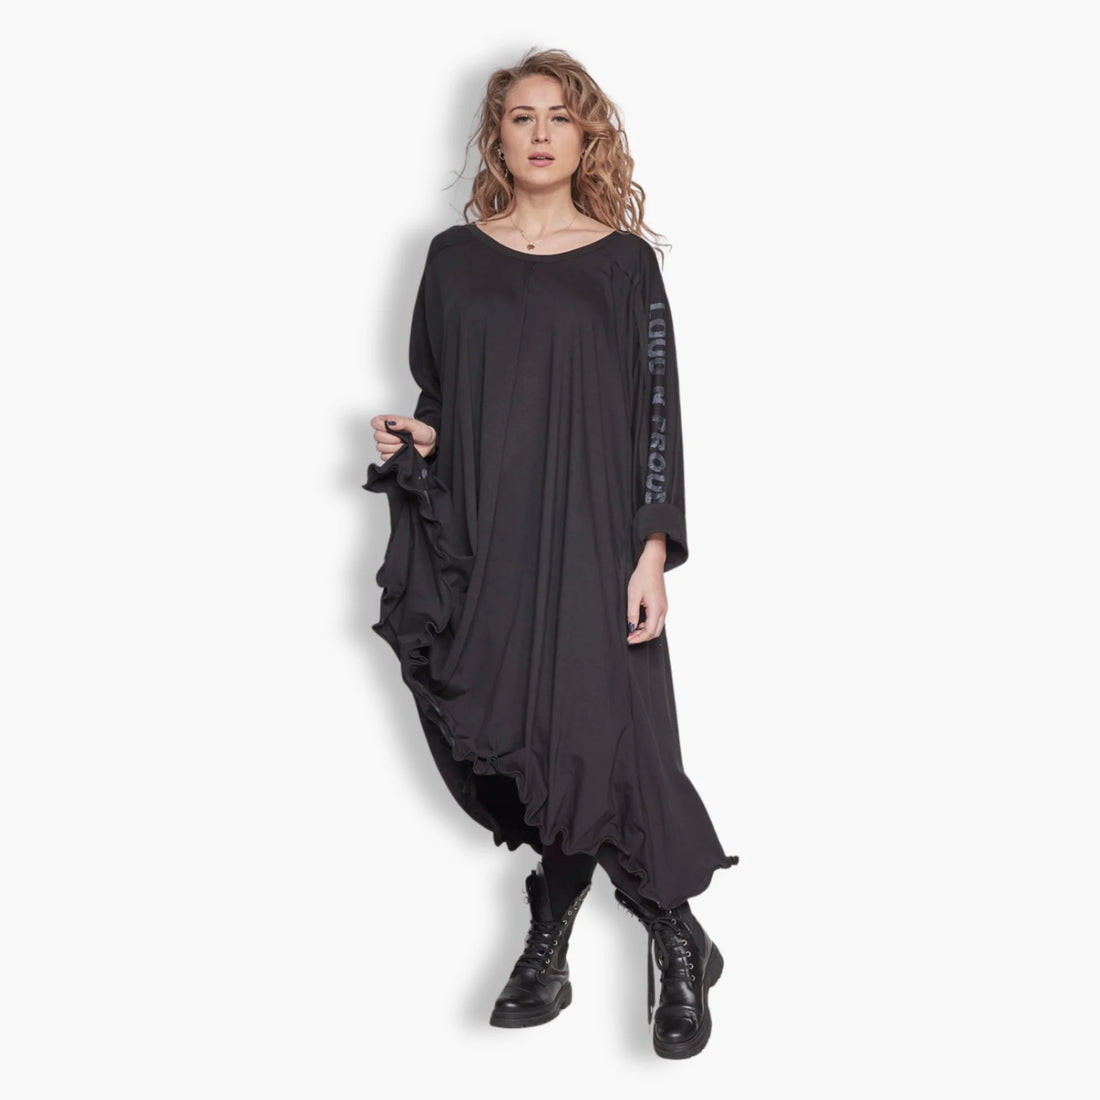 Kleid von Loud N Proud aus Baumwolle in gerundeter Form, LNP900, Schwarz, Schick, Modern